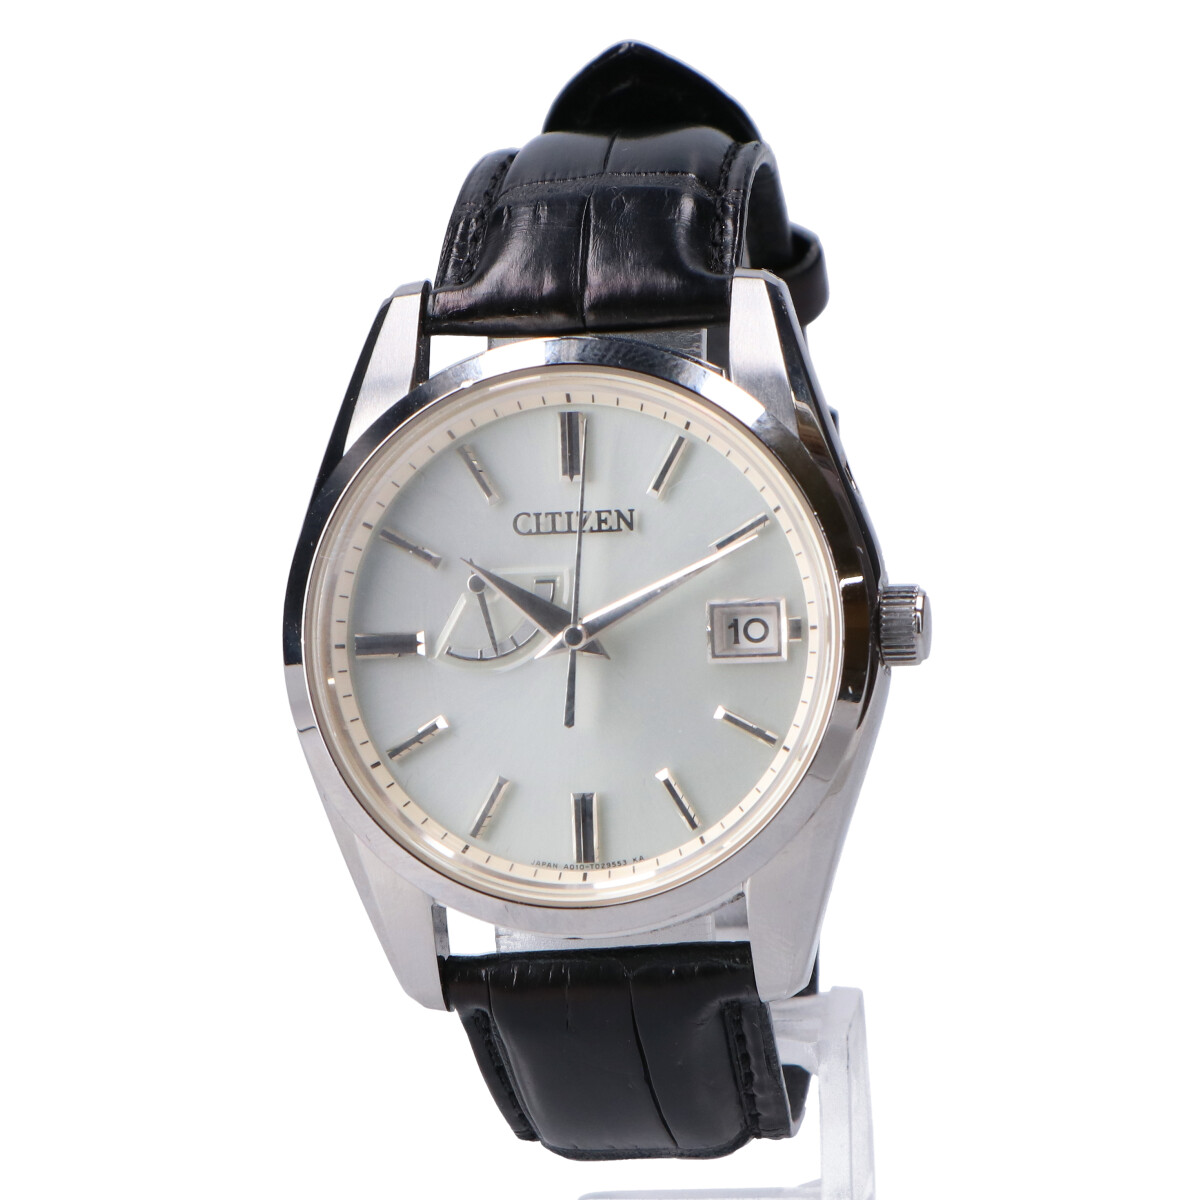 シチズンのAQ1010-03A The CITIZEN クロコレザーベルト 時計の買取実績です。